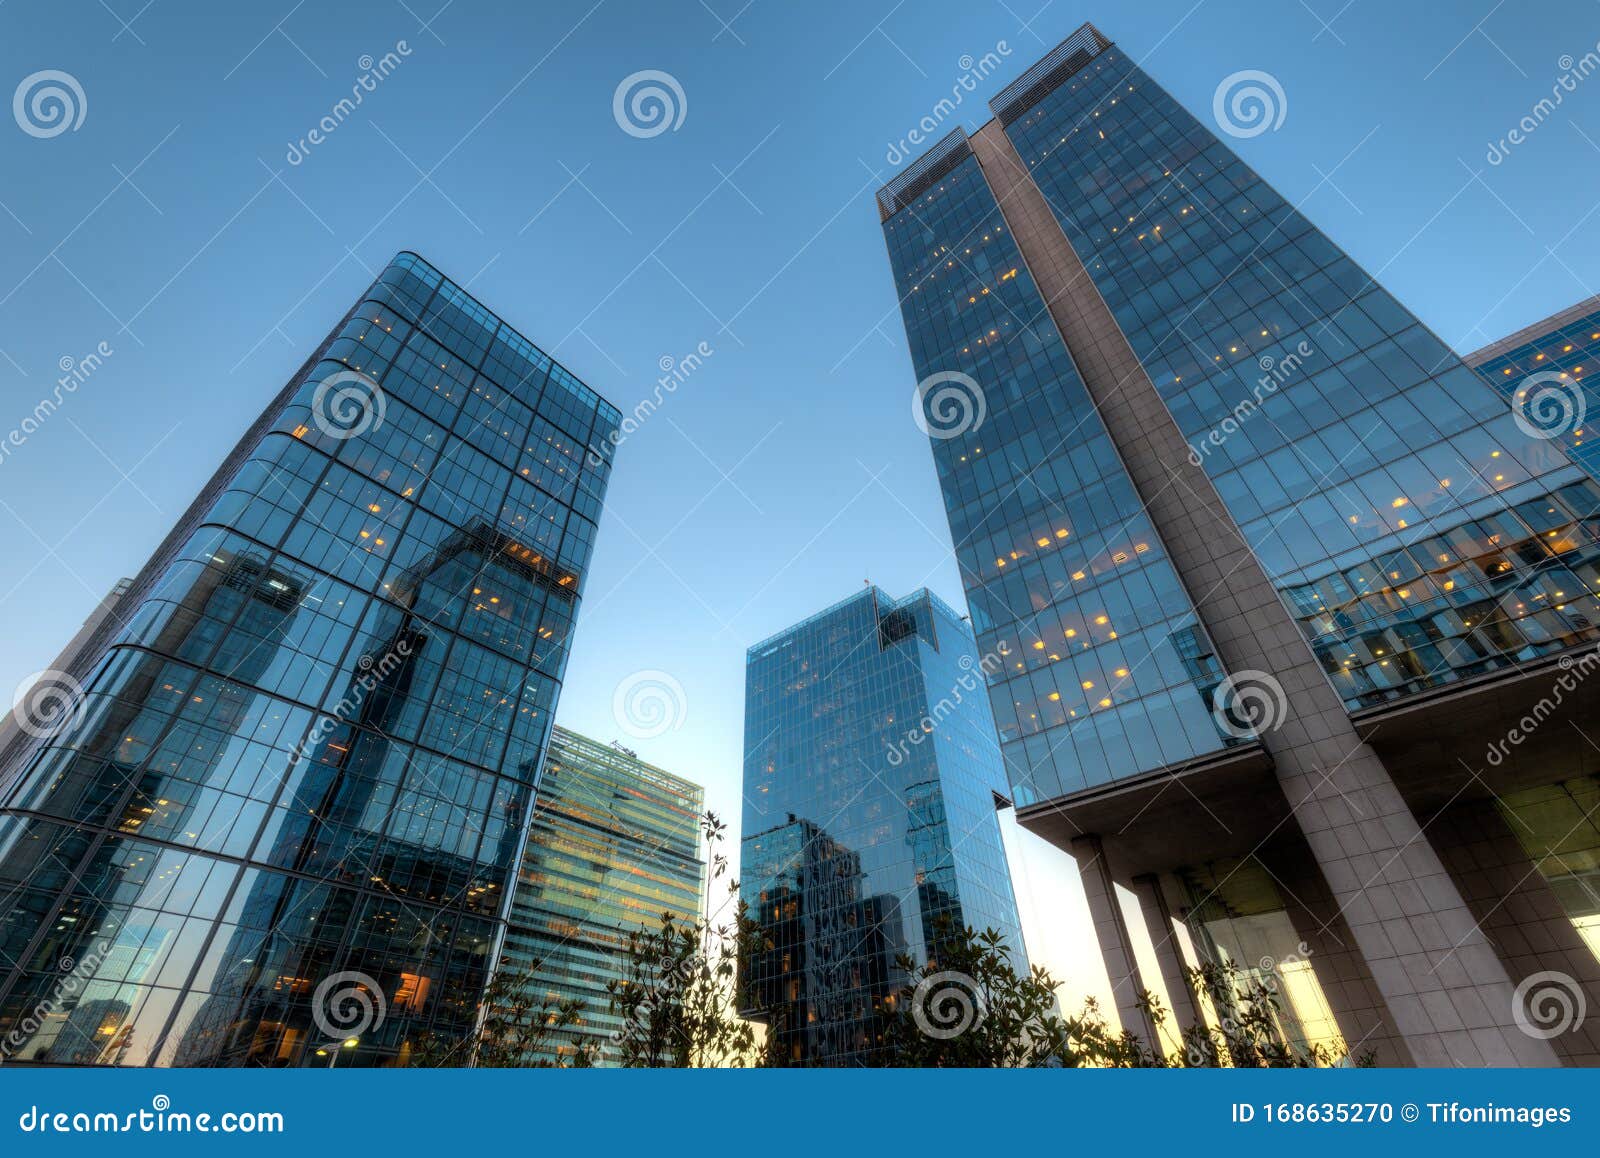 office buildings at financial district known as nueva las condes in rosario norte street, las condes, santiago